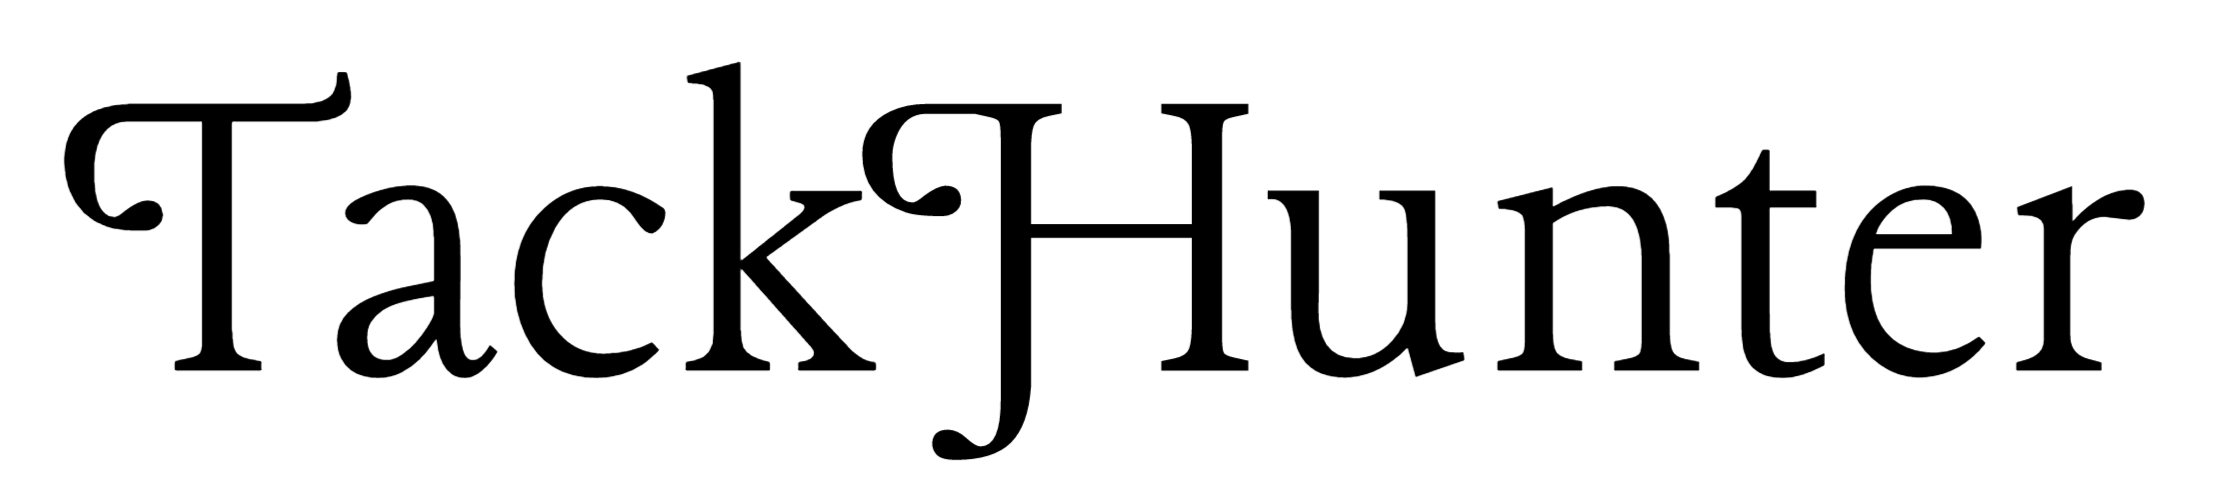 tackhunter.md logo